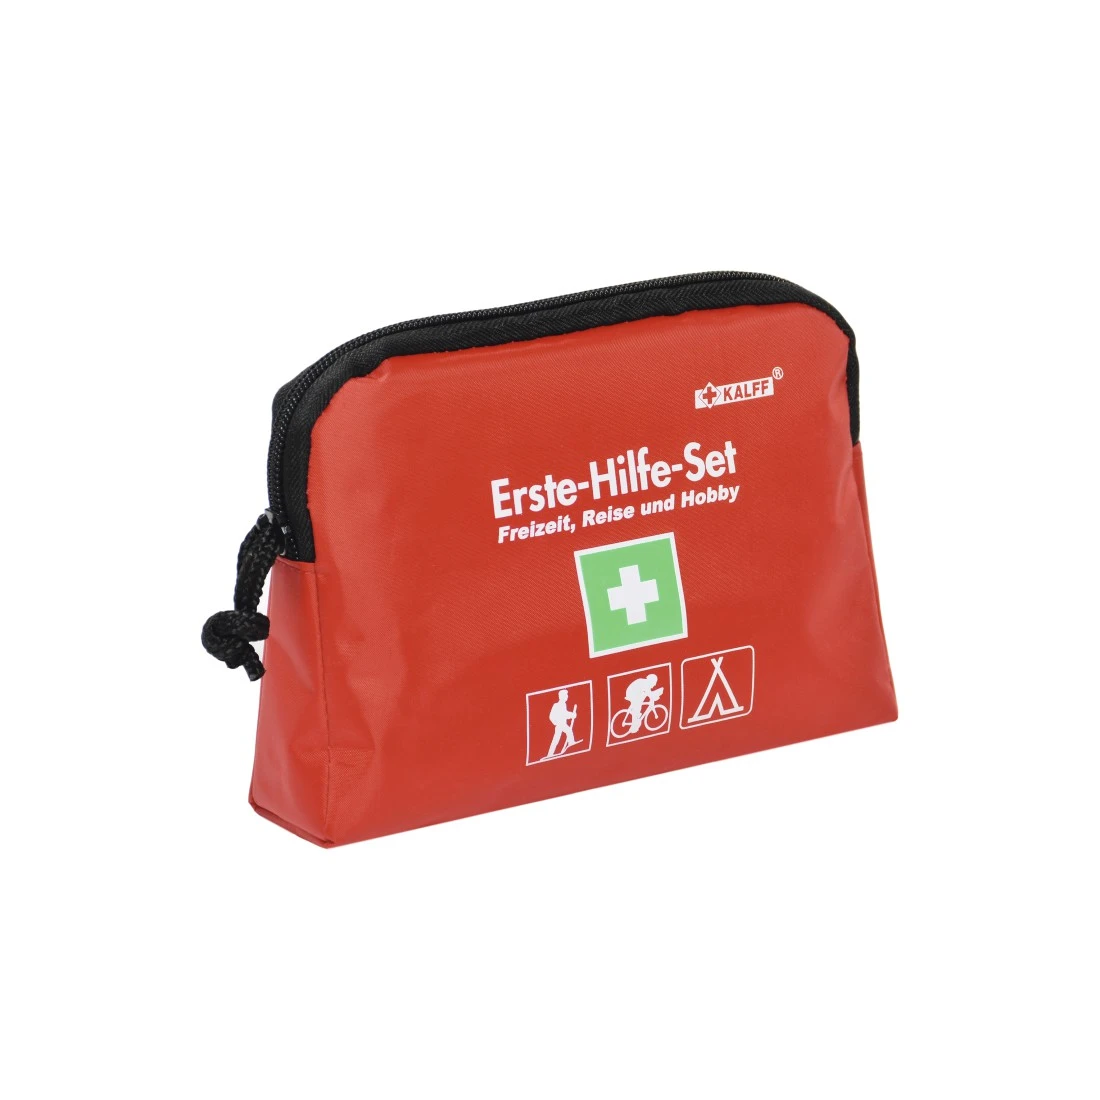 Erste-Hilfe-Set 'Standard' von Relags – die kleine Notfalltasche für  unterwegs